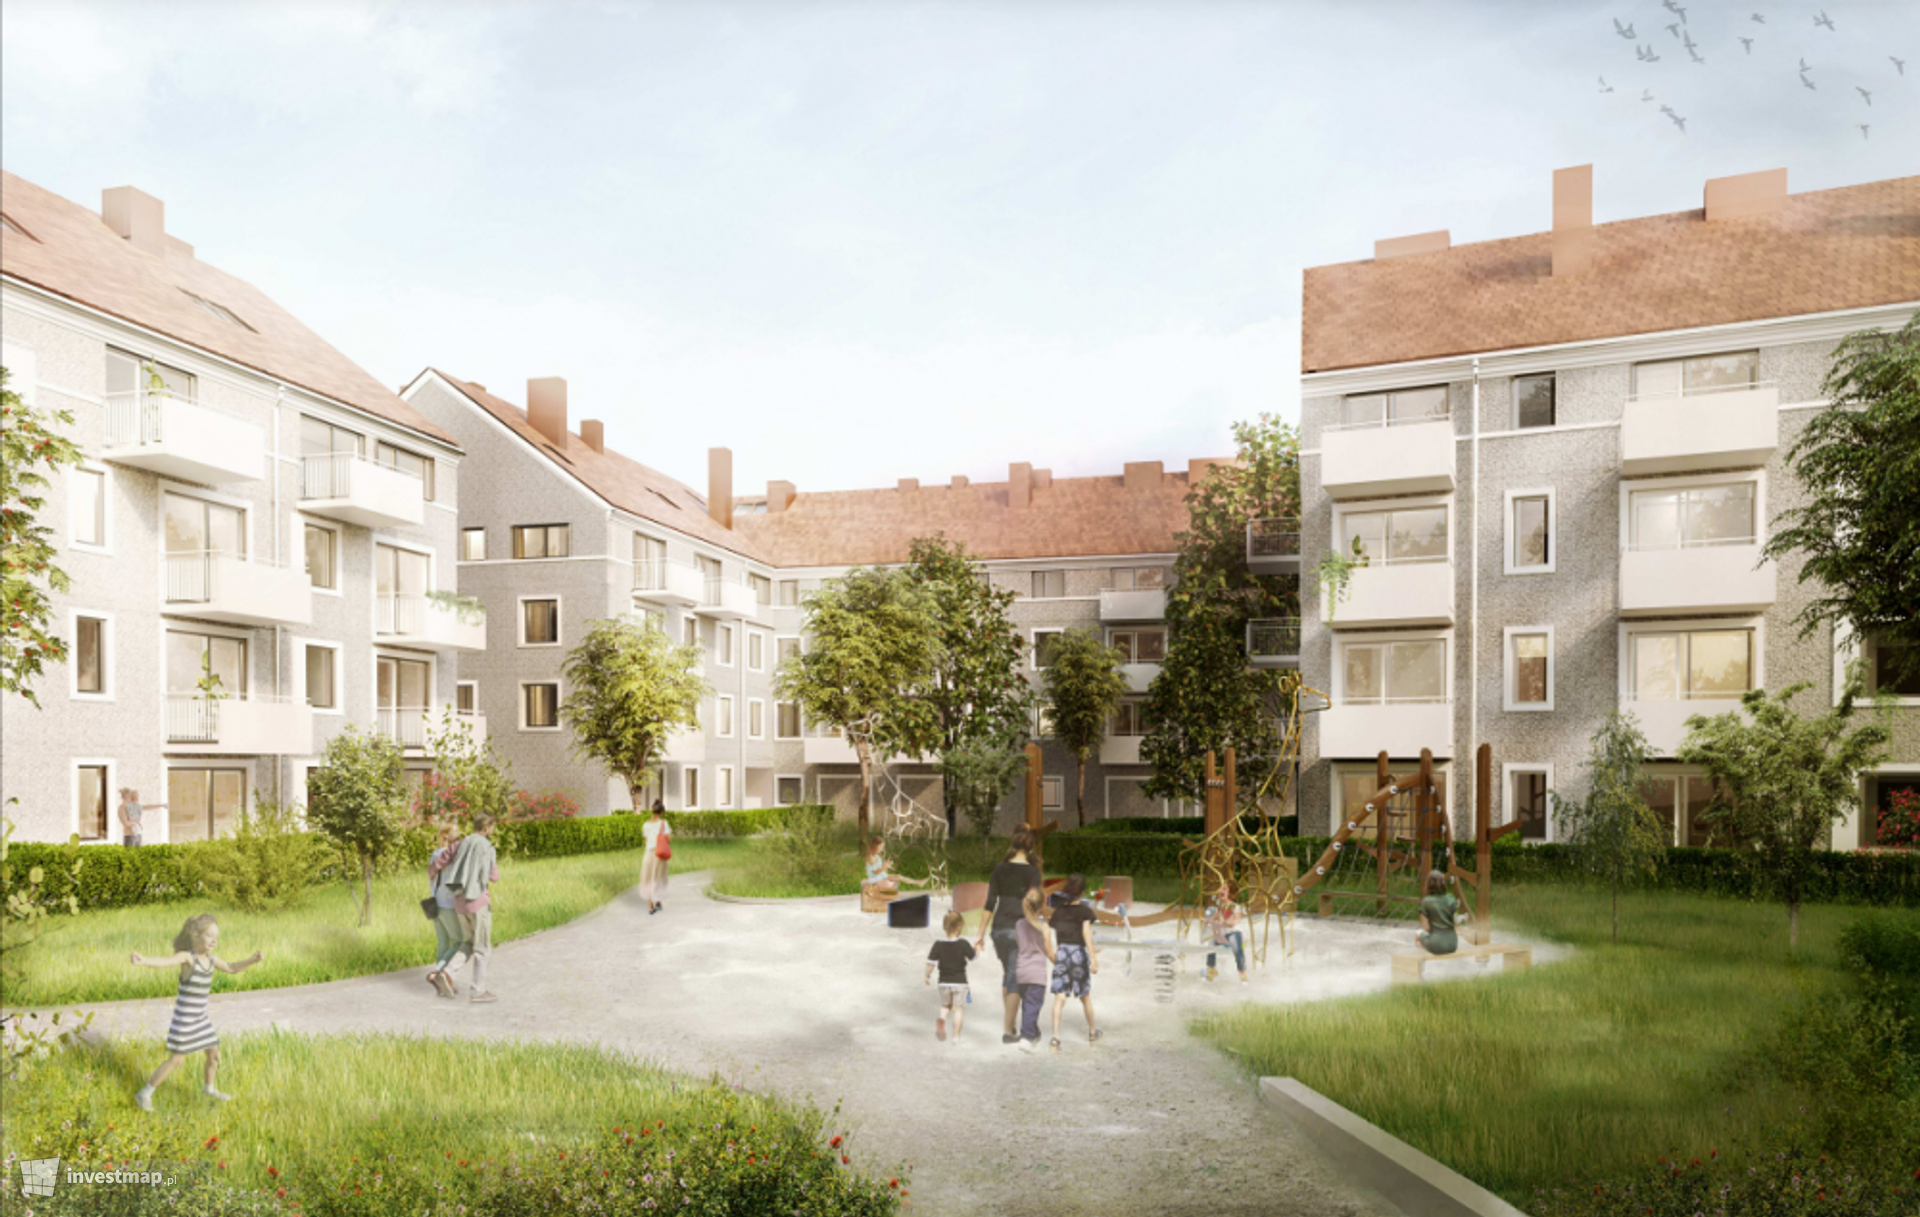 Jesienią ruszy we Wrocławiu I etap budowy wielkiego osiedla  PFR S.A. z 1300 mieszkaniami 